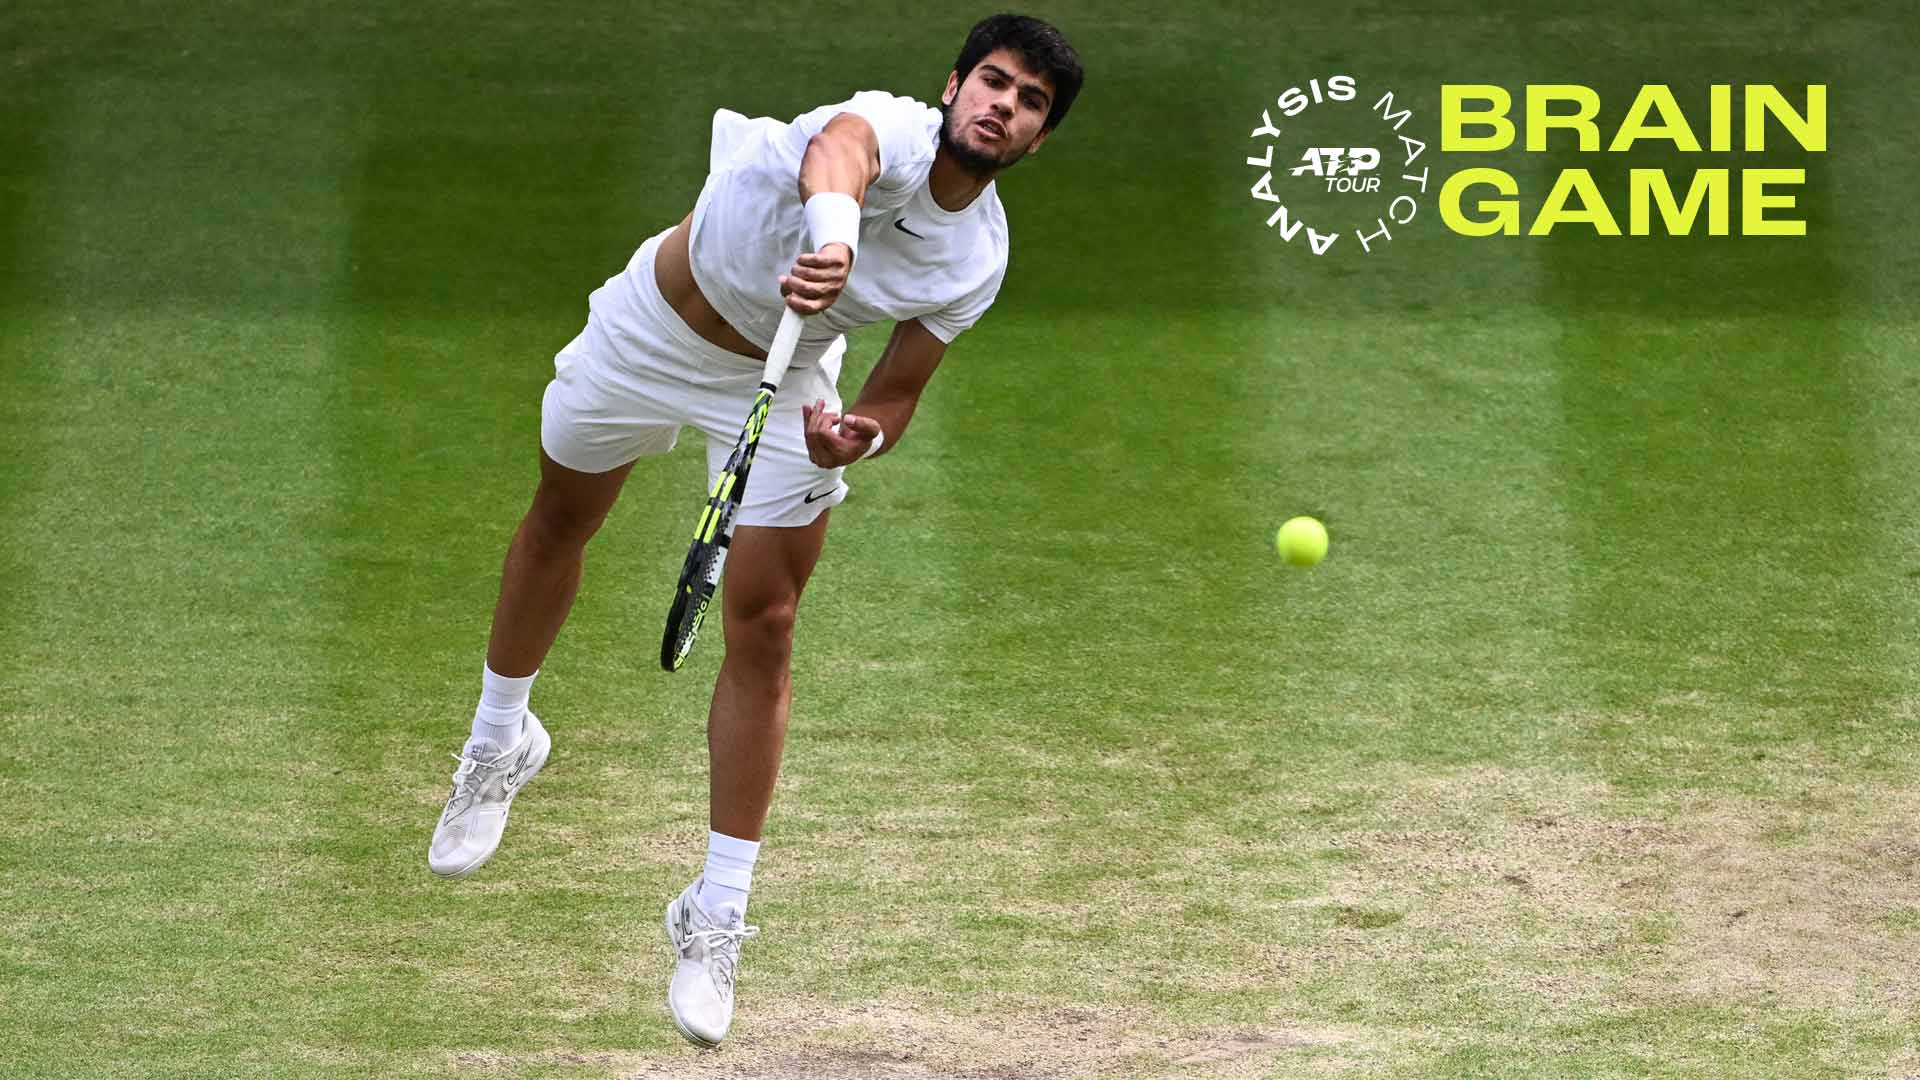 How Alcarazs Scintillating Serve Toppled Djokovics Return In The Wimbledon Final ATP Tour Tennis